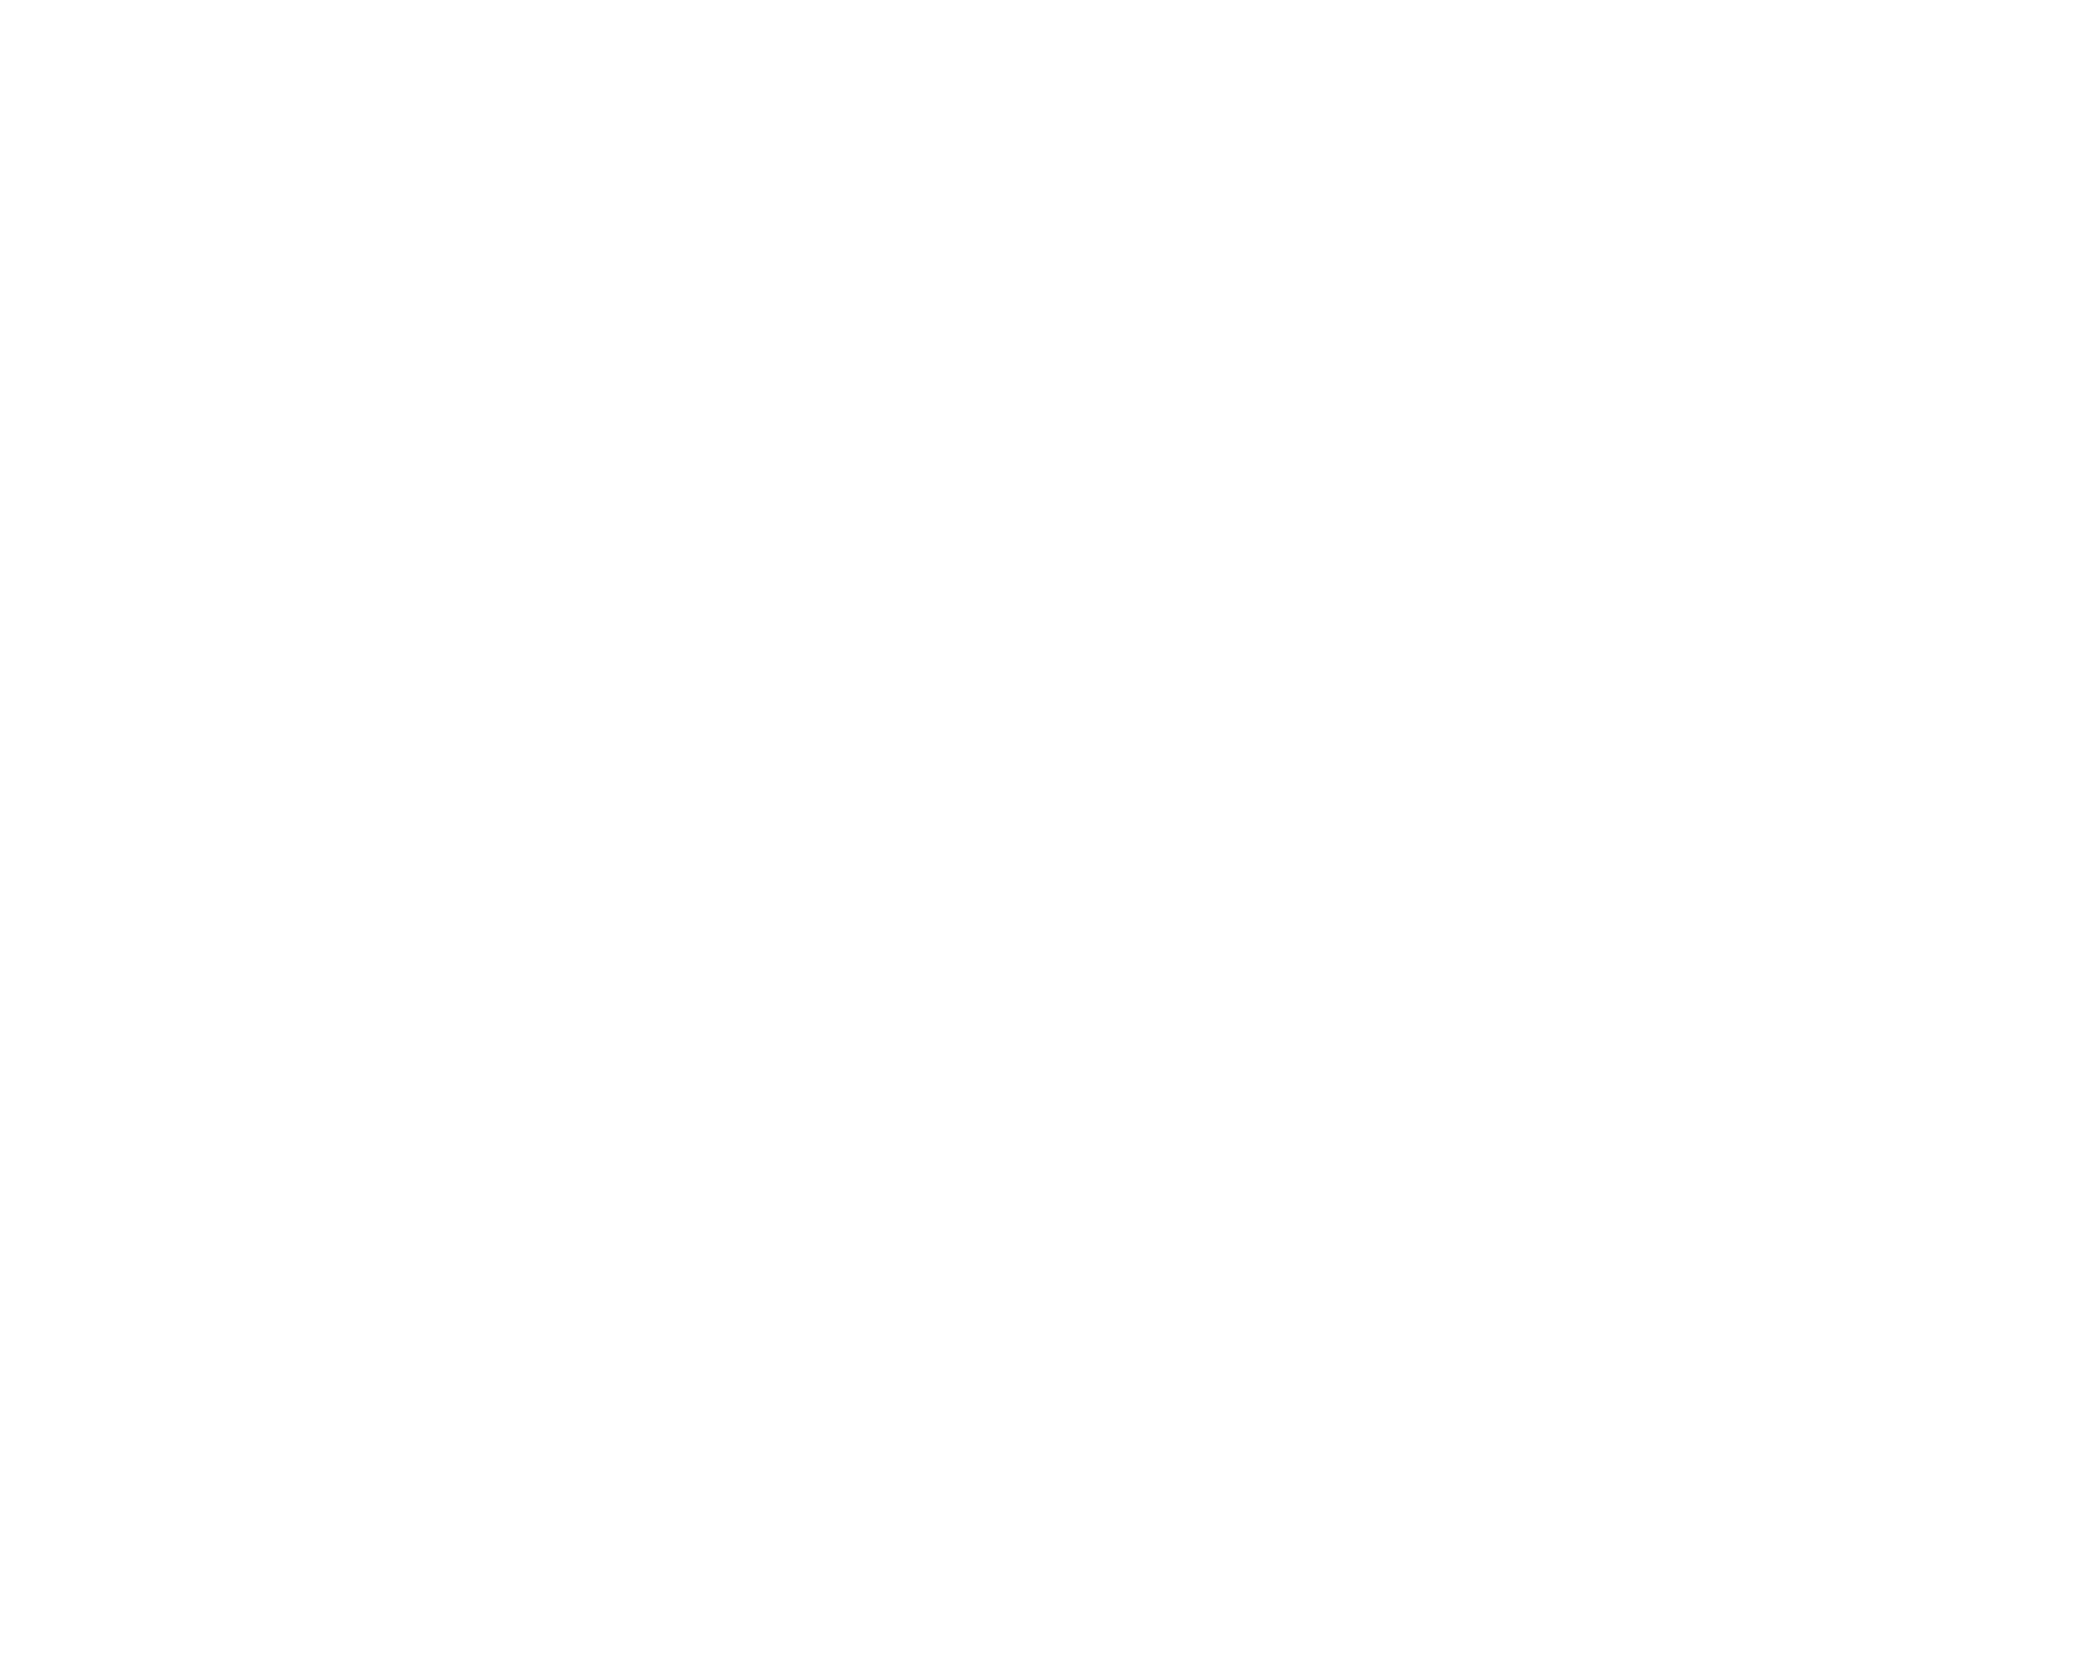 CSOC